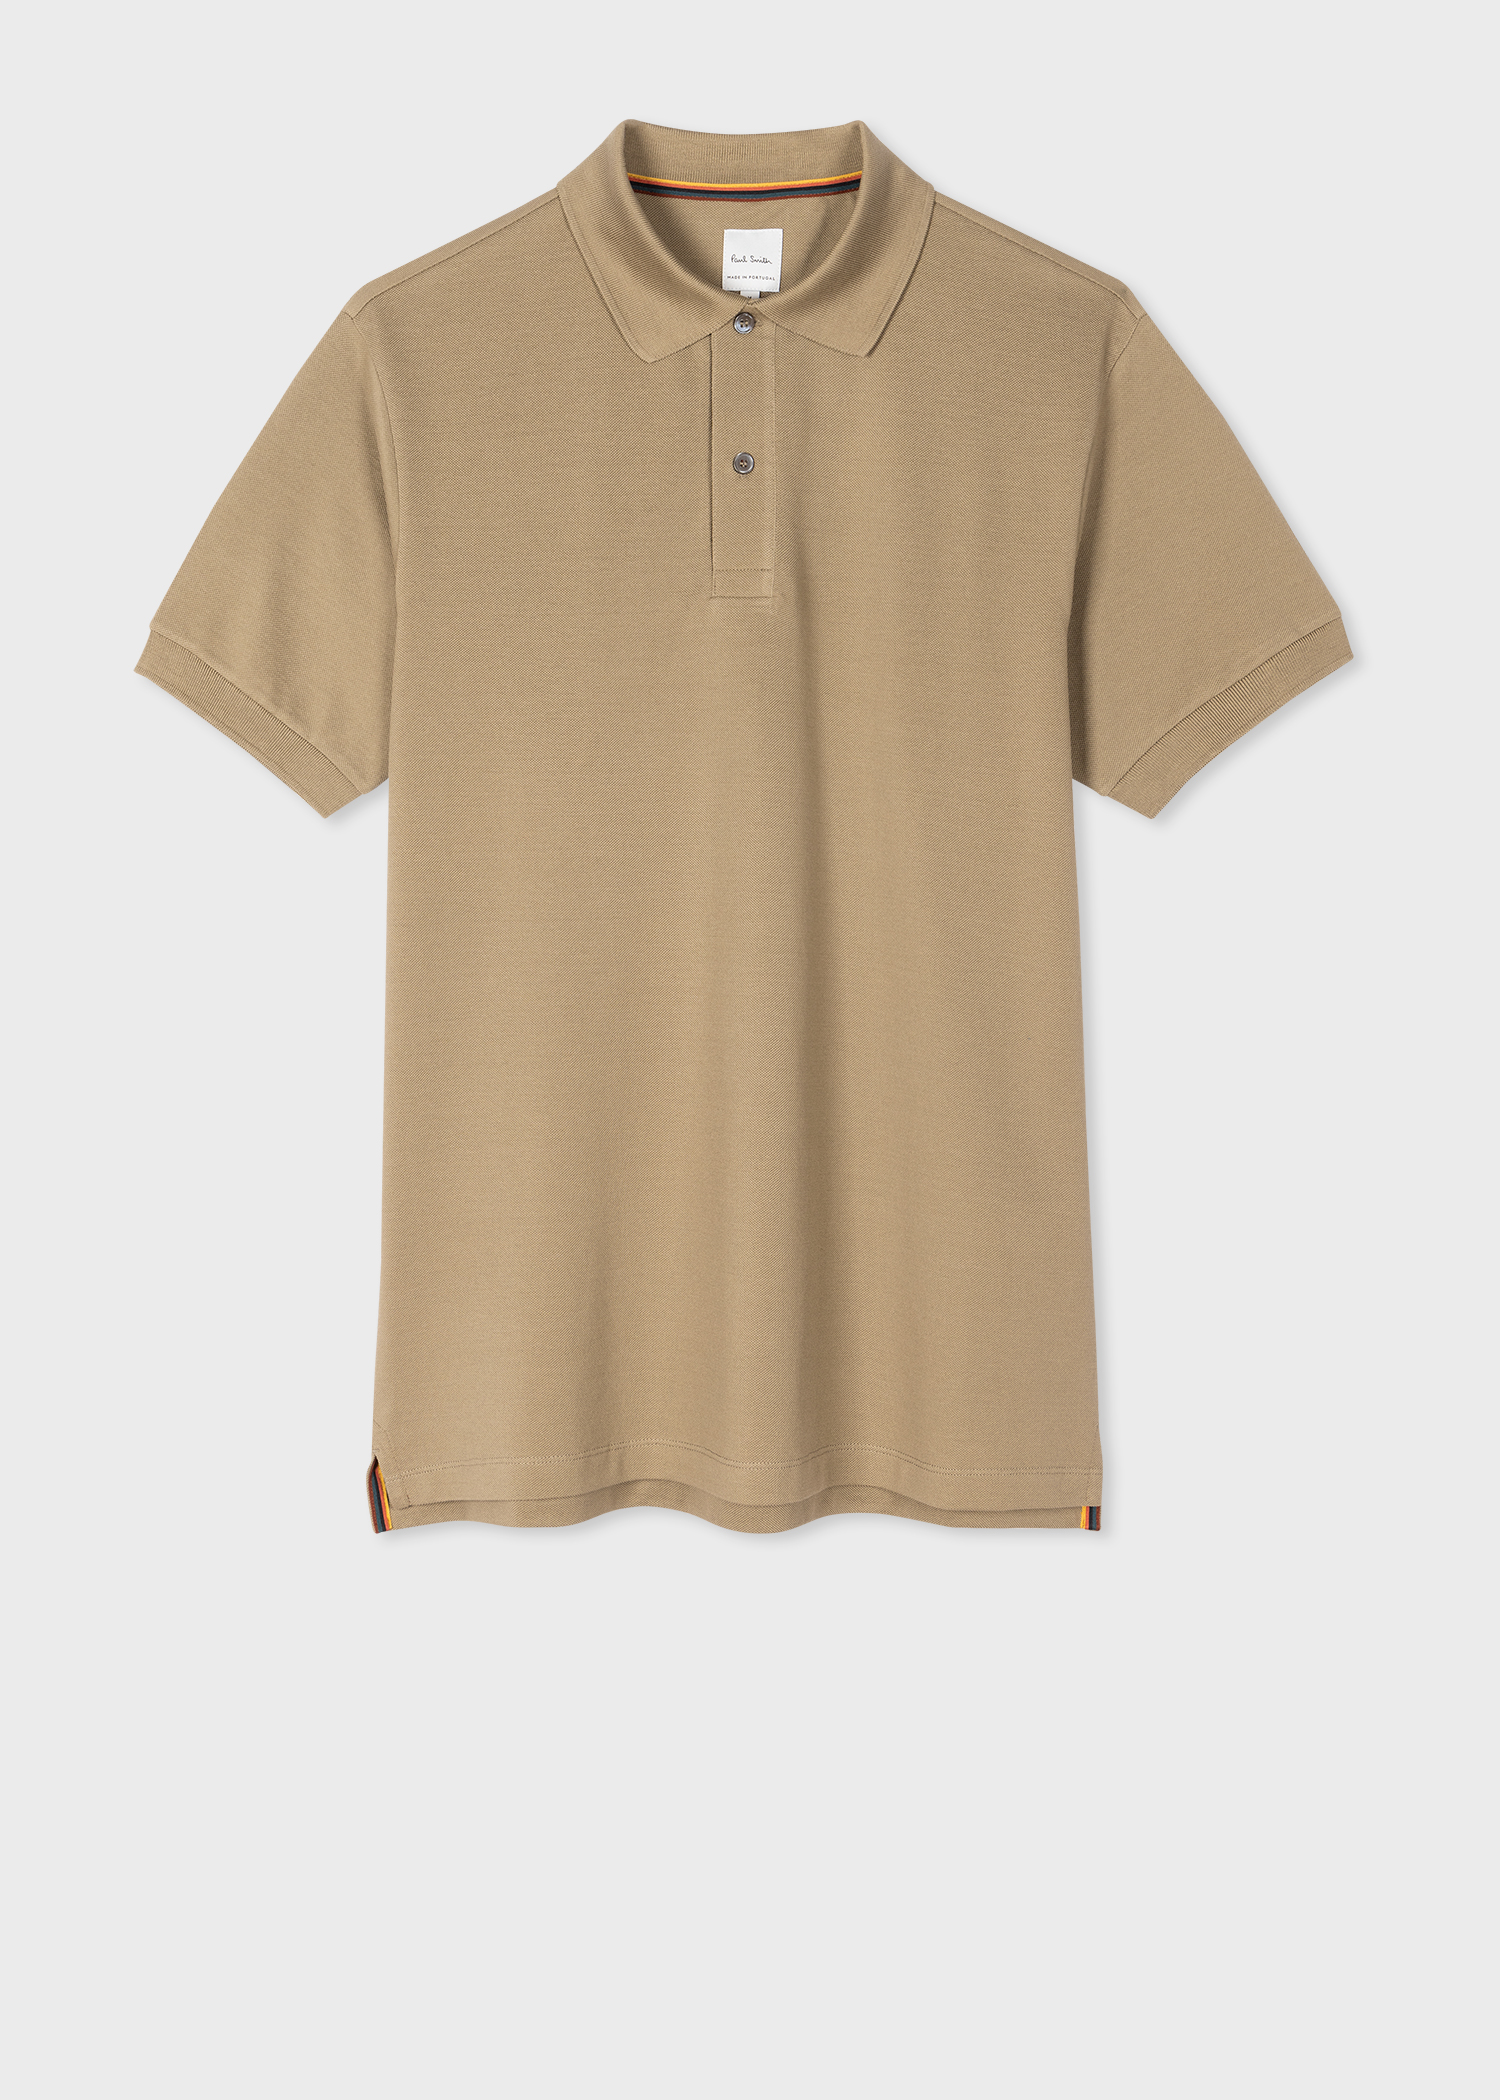 Men's Tan Cotton 'Artist Stripe' Placket Polo Shirt